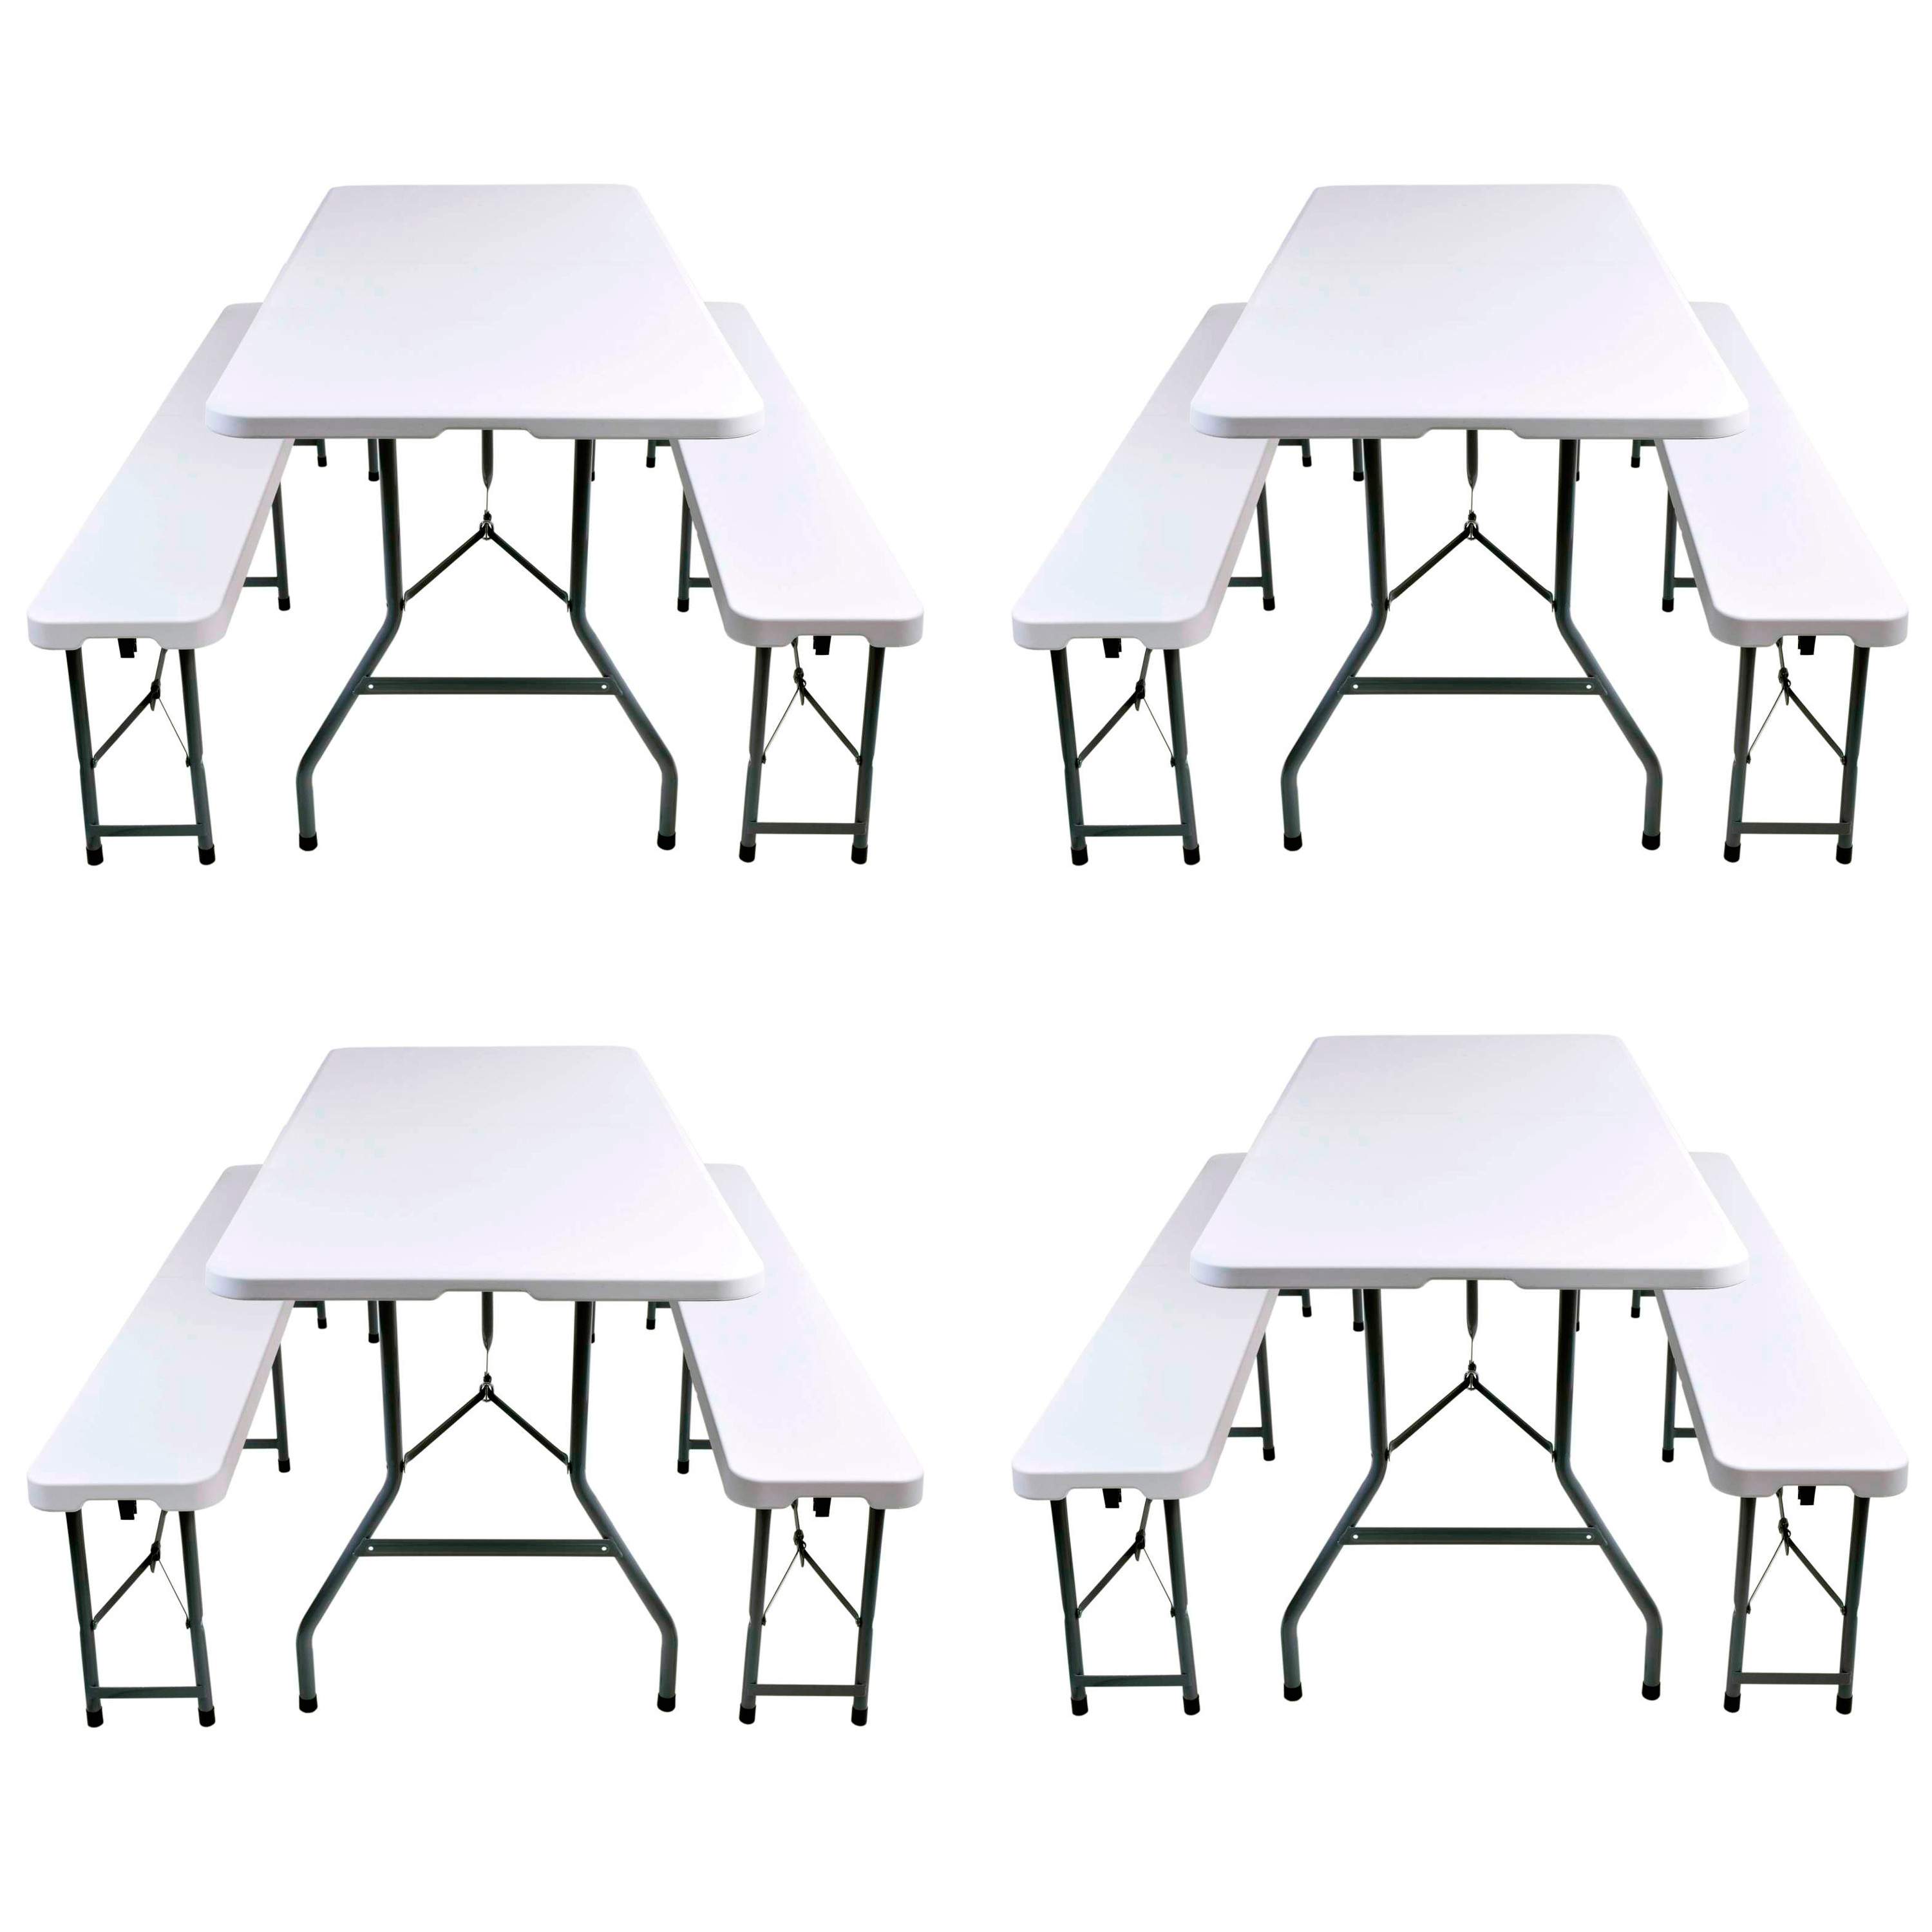 Набор складной мебели для дома, конференций, пикника CarryOn Etna 1.8 м белый (4 стола + 8 скамеек)